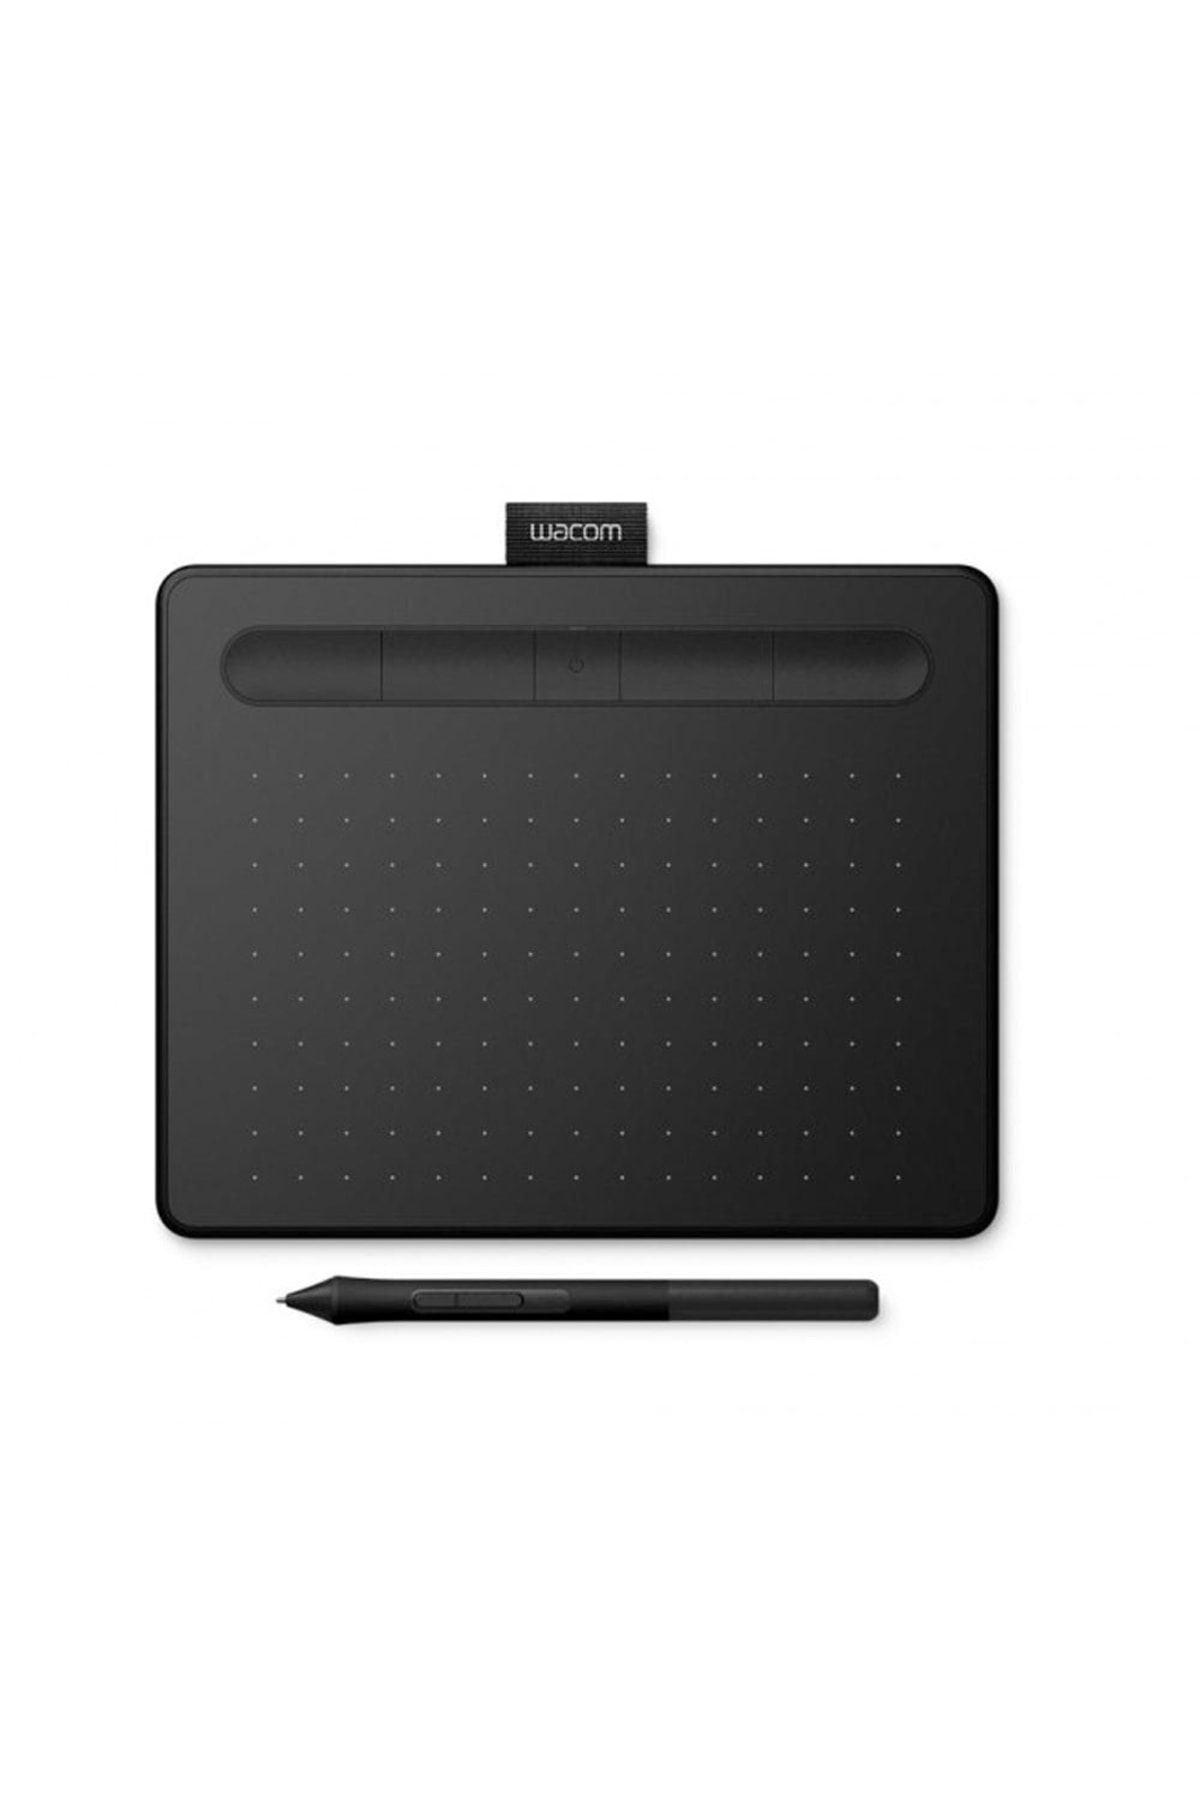 Wacom Ctl-4100wlk-n Intuos Small Grafik Tablet - Siyah